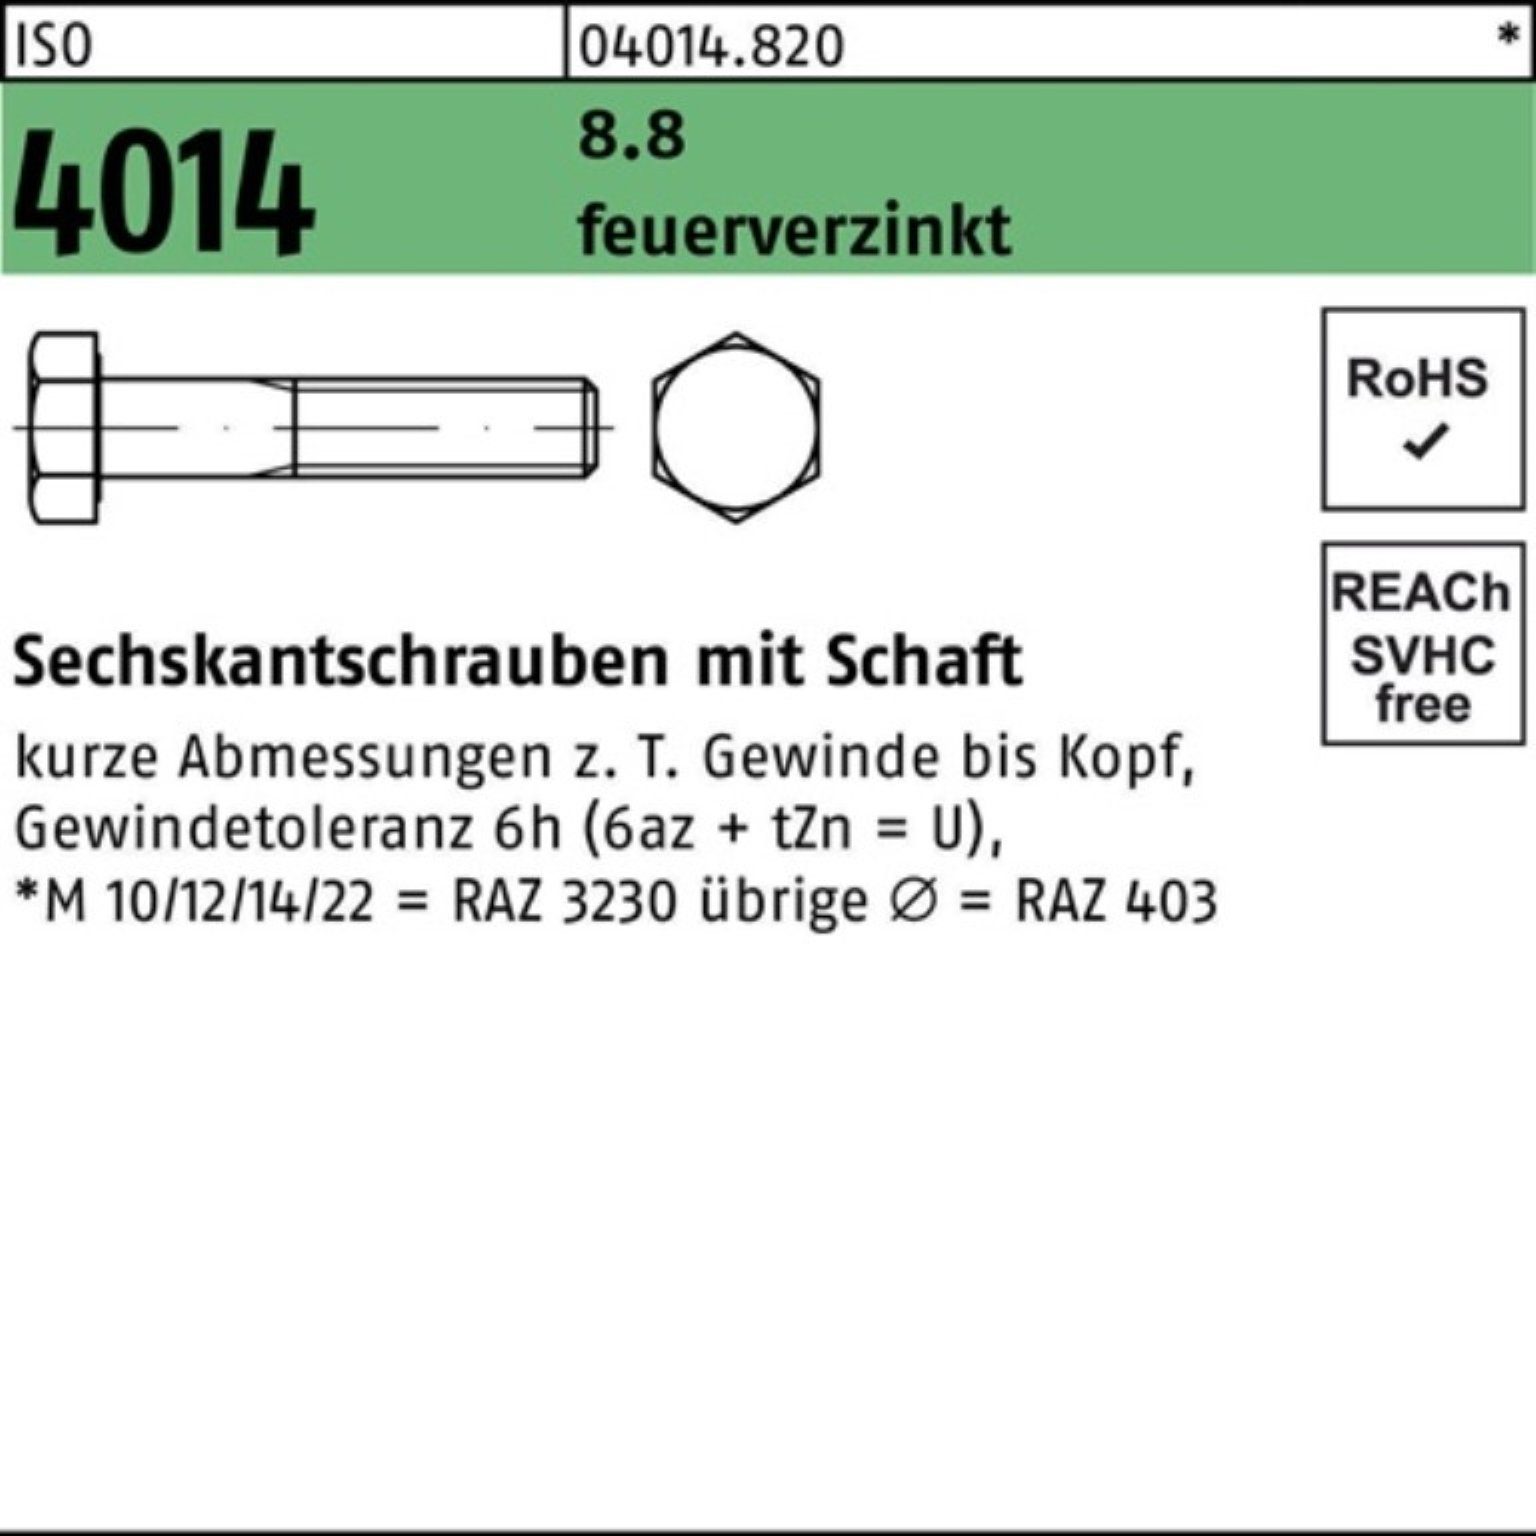 Bufab Sechskantschraube 200er Pack Sechskantschraube ISO 4014 Schaft M8x 60 8.8 feuerverz. 200